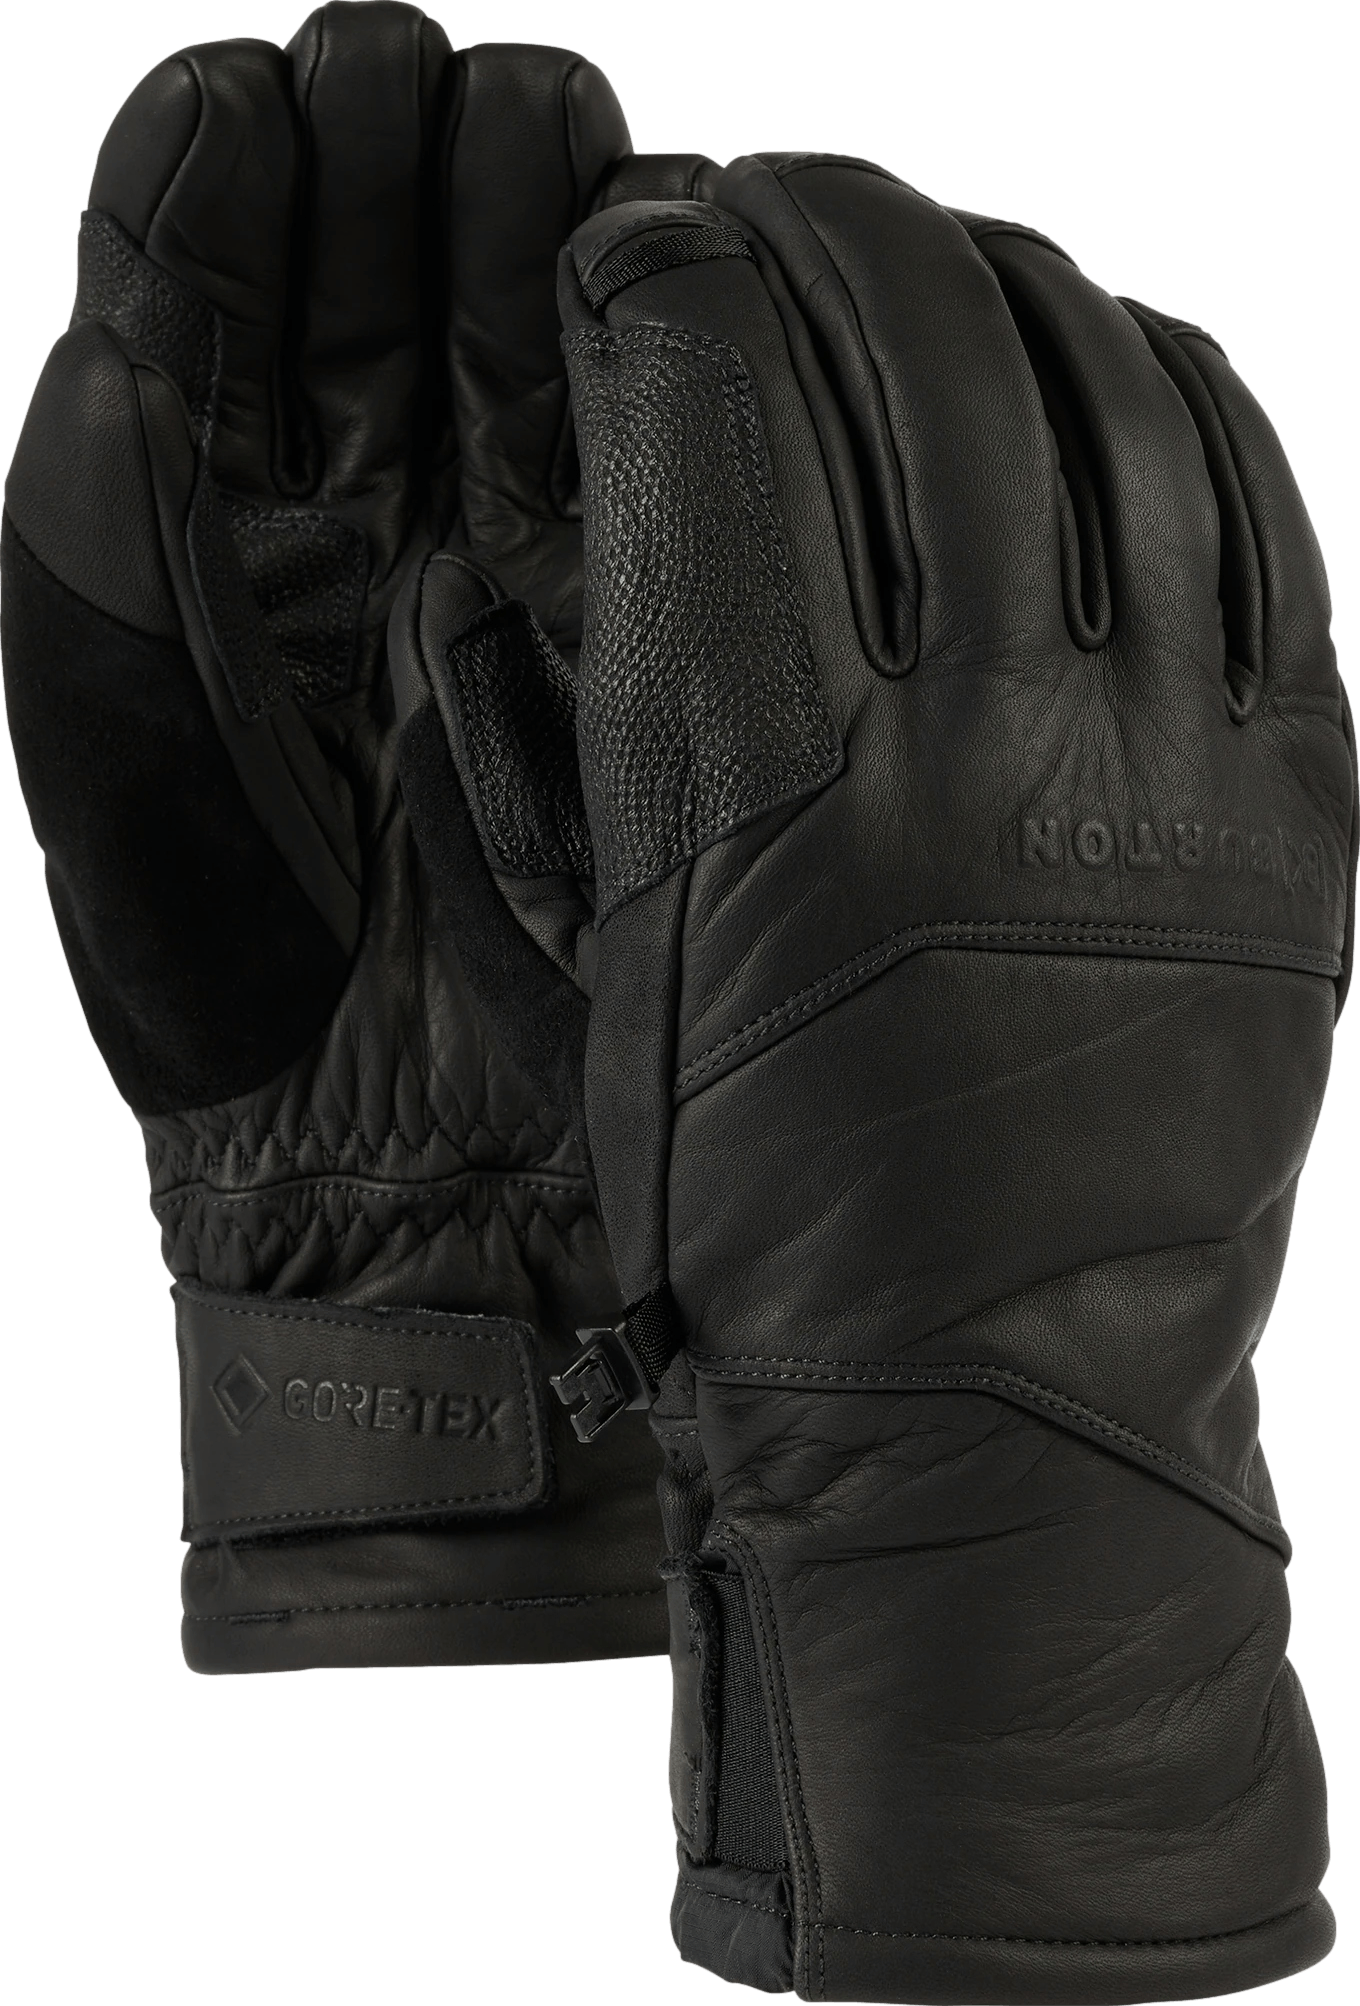 Burton AK Clutch Glove